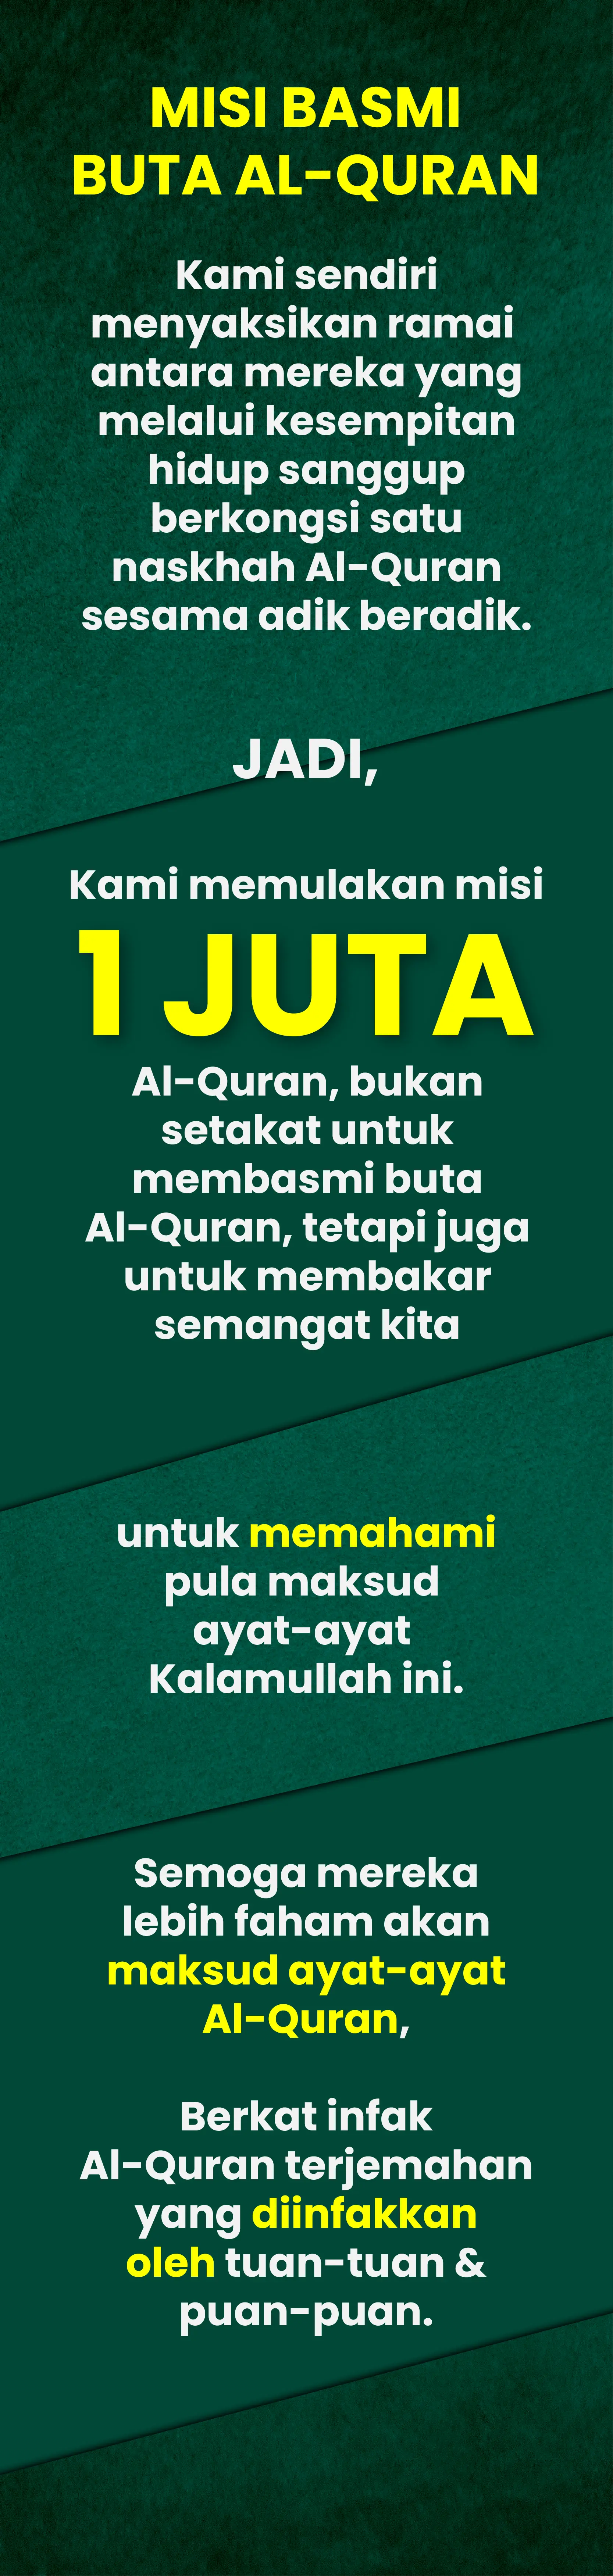 Infak Al-Quran LP 02